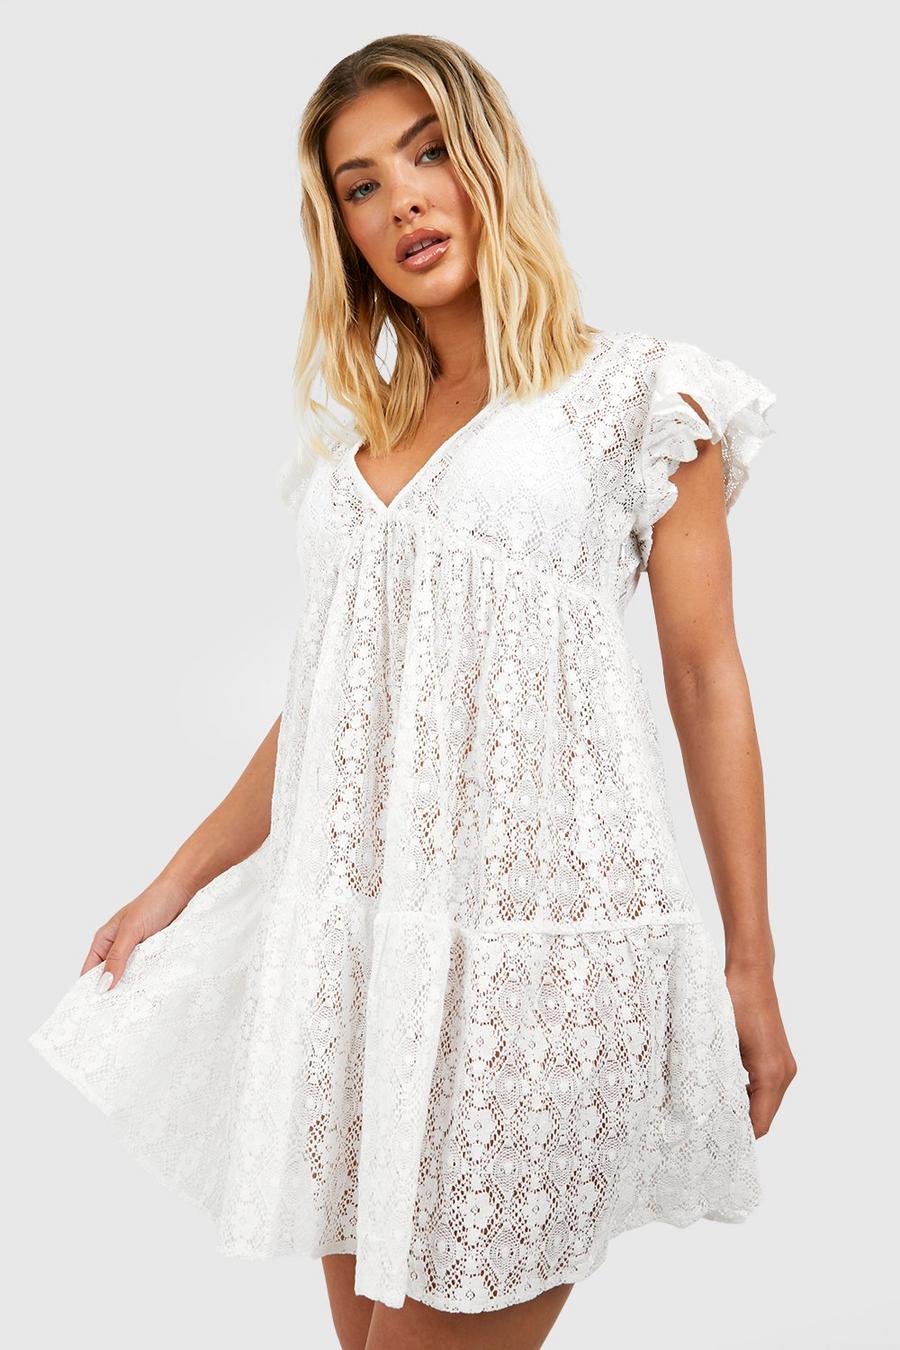 White שמלת מיני לחוף עם מלמלה, תחרה ומחשוף עמוק